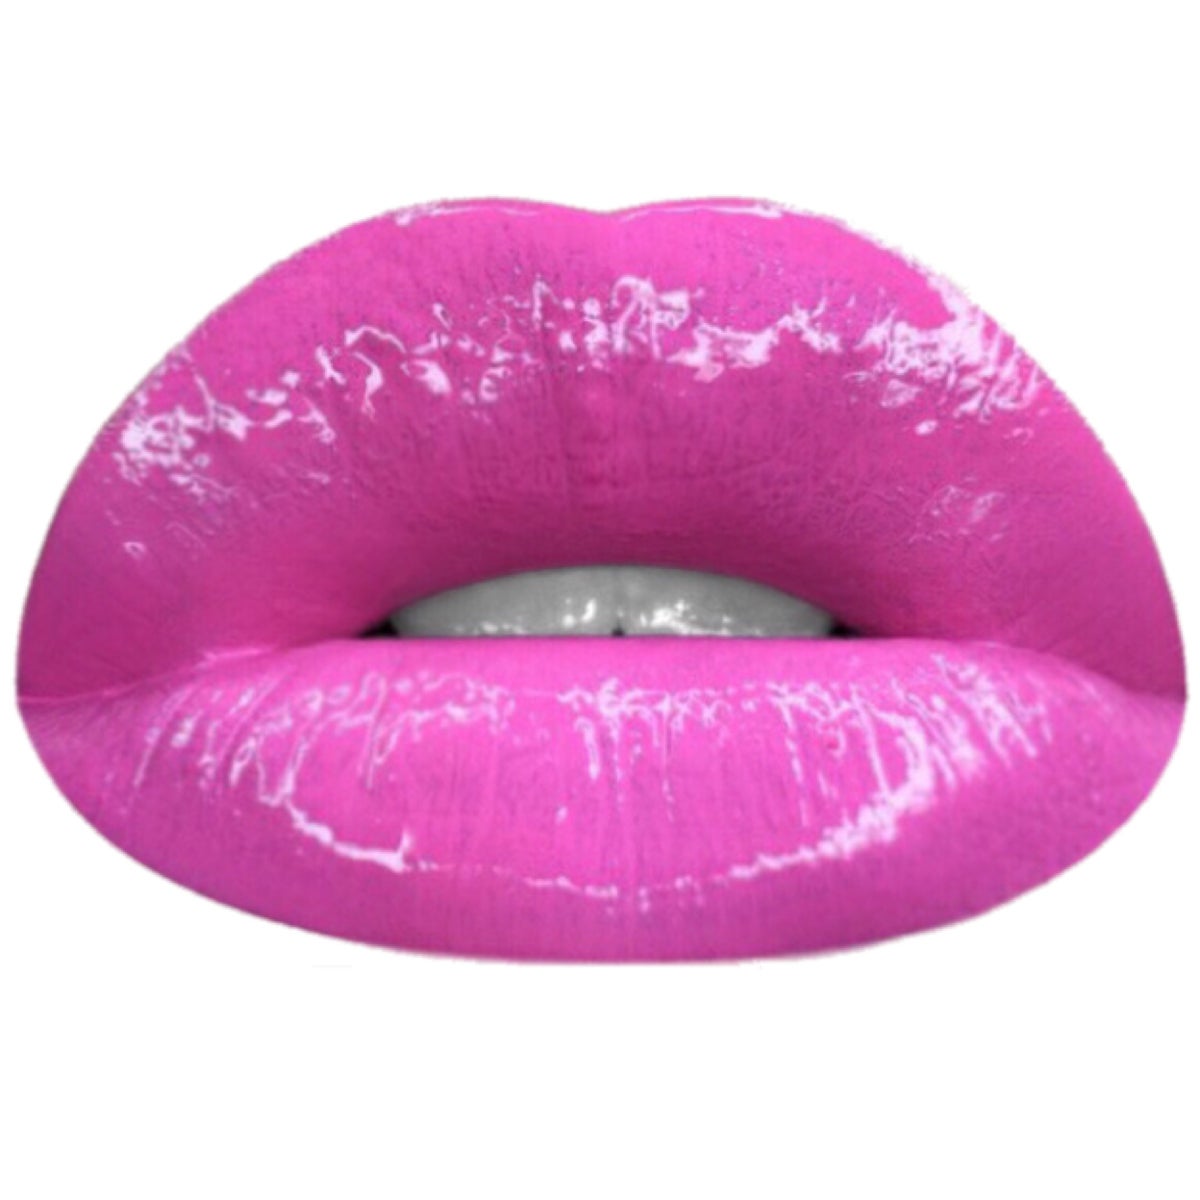 Image result for pnk digger hot pink lip